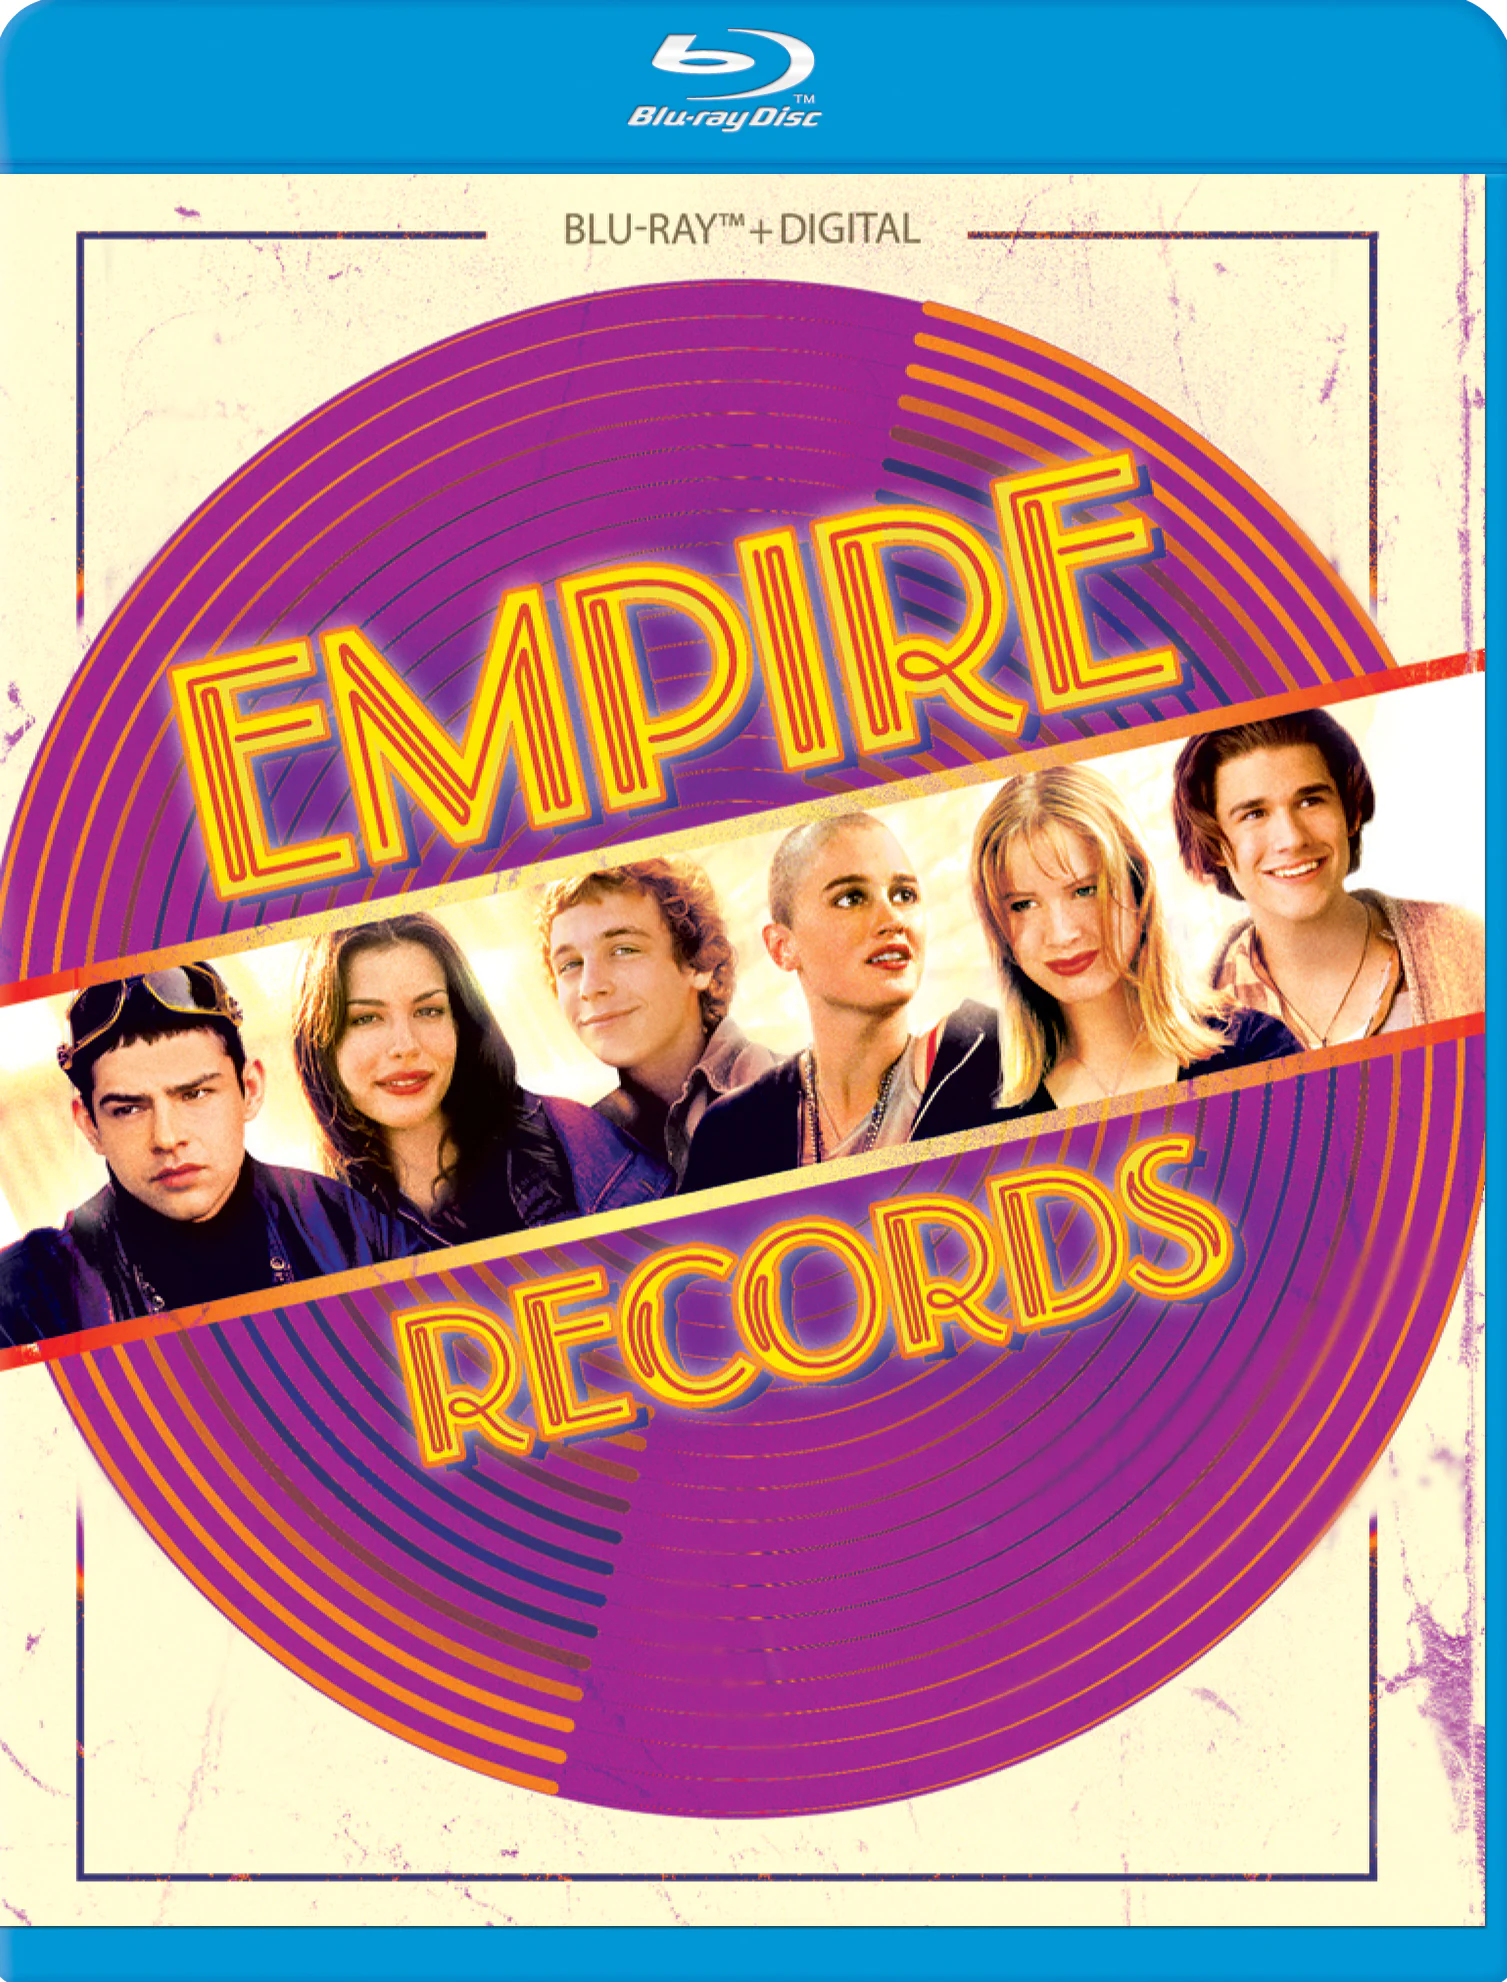 دانلود فیلم Empire Records 1995 با زیرنویس فارسی چسبیده